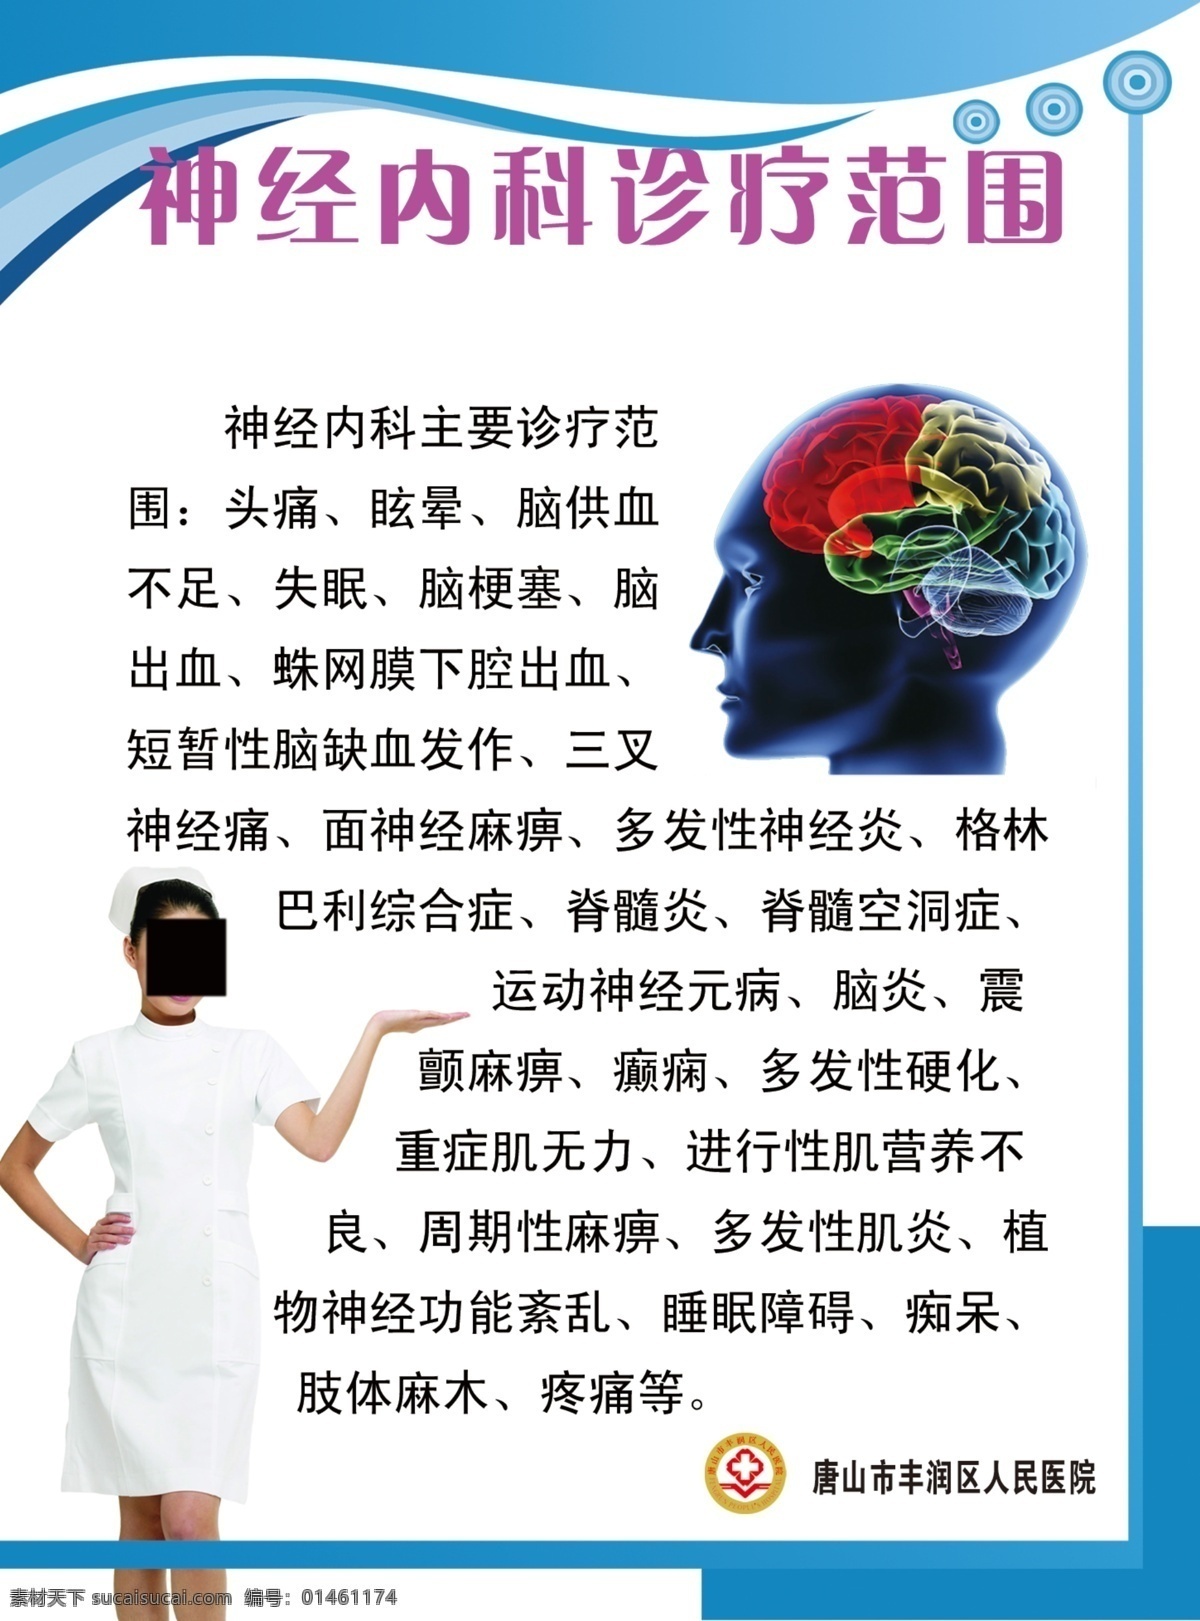 神经内科 诊疗 范围 医院展板 护士图片 大脑图片 蓝色背景 医院 分层 源文件